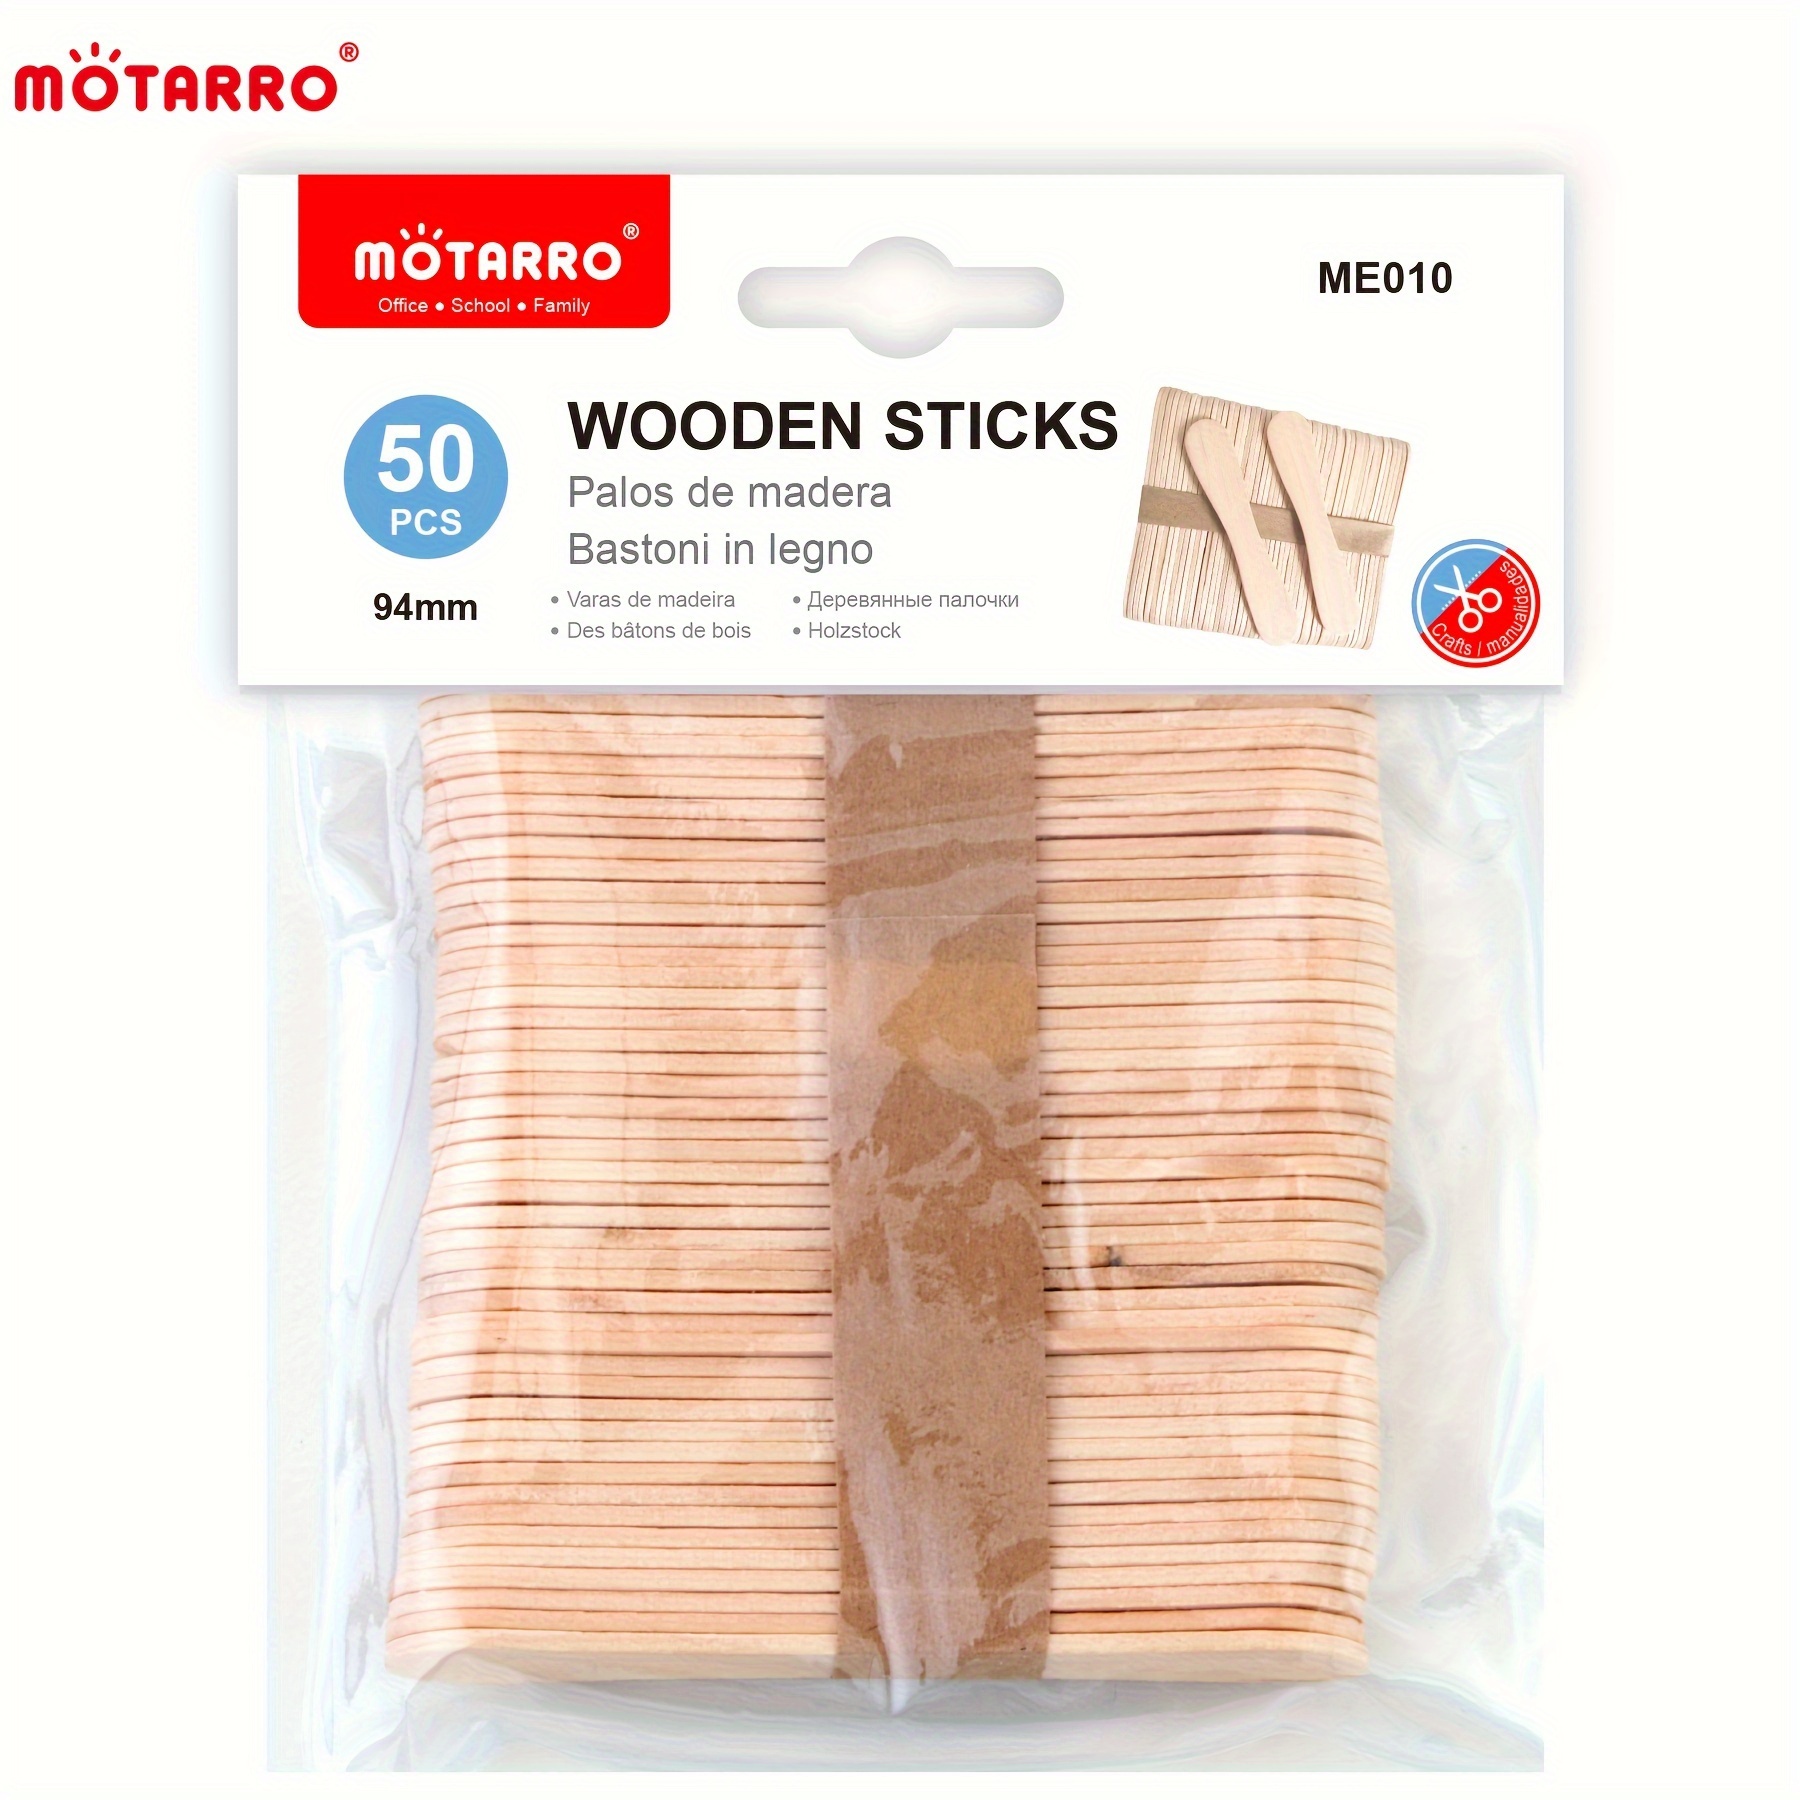 Paquete de 2 (100 unidades) de palitos de madera para manualidades, ideal  para helados, artesanos y estudiantes (madera)